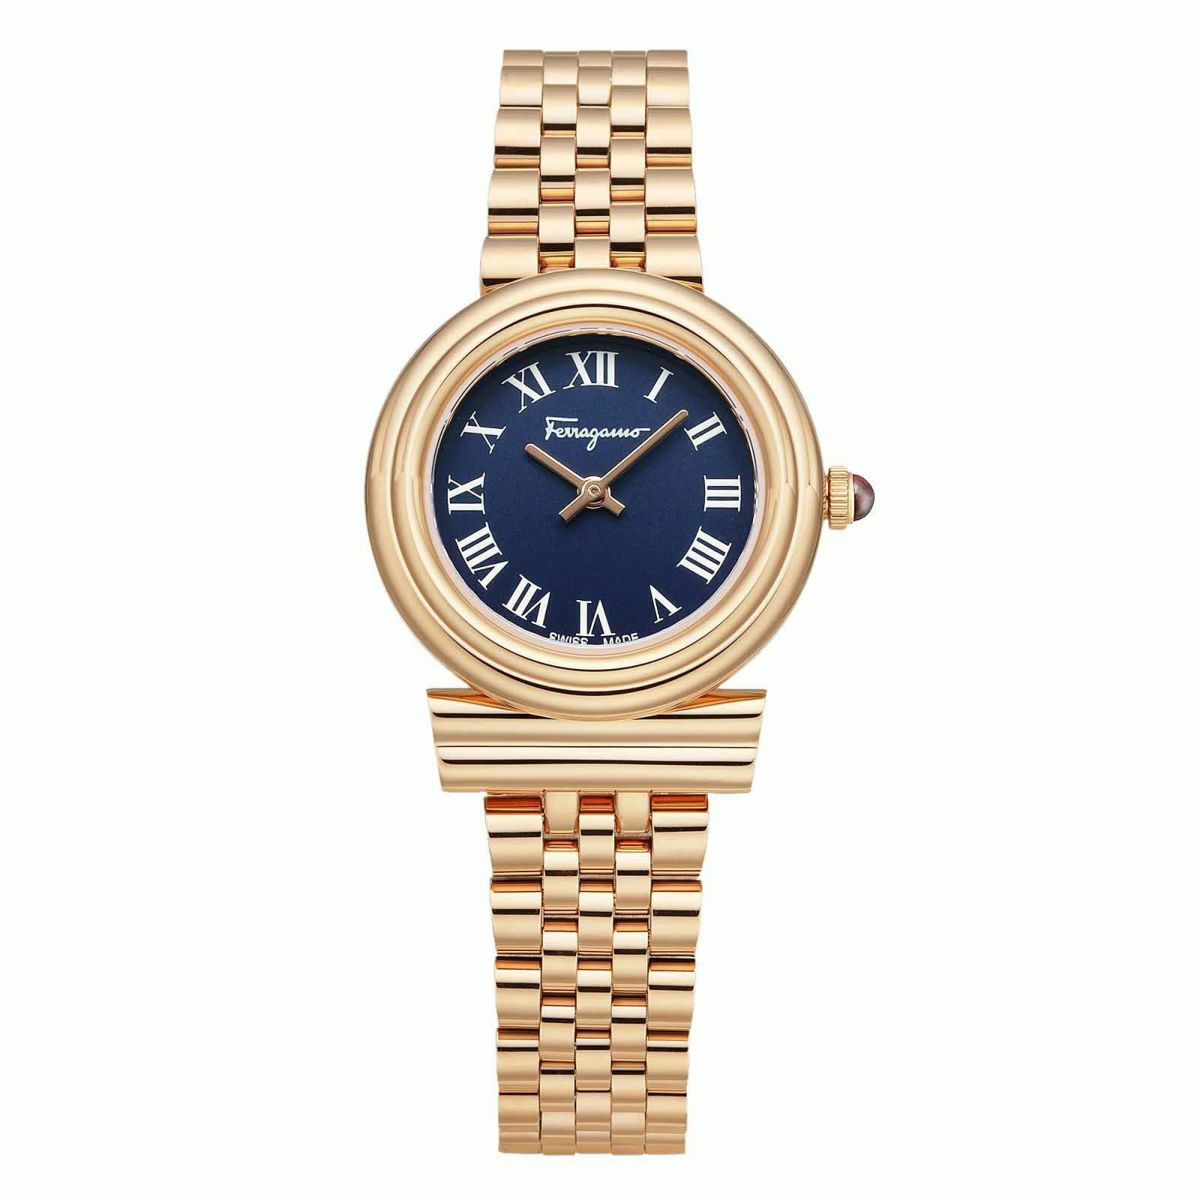 ガンチーニ | 海外ブランド腕時計通販 U-collection